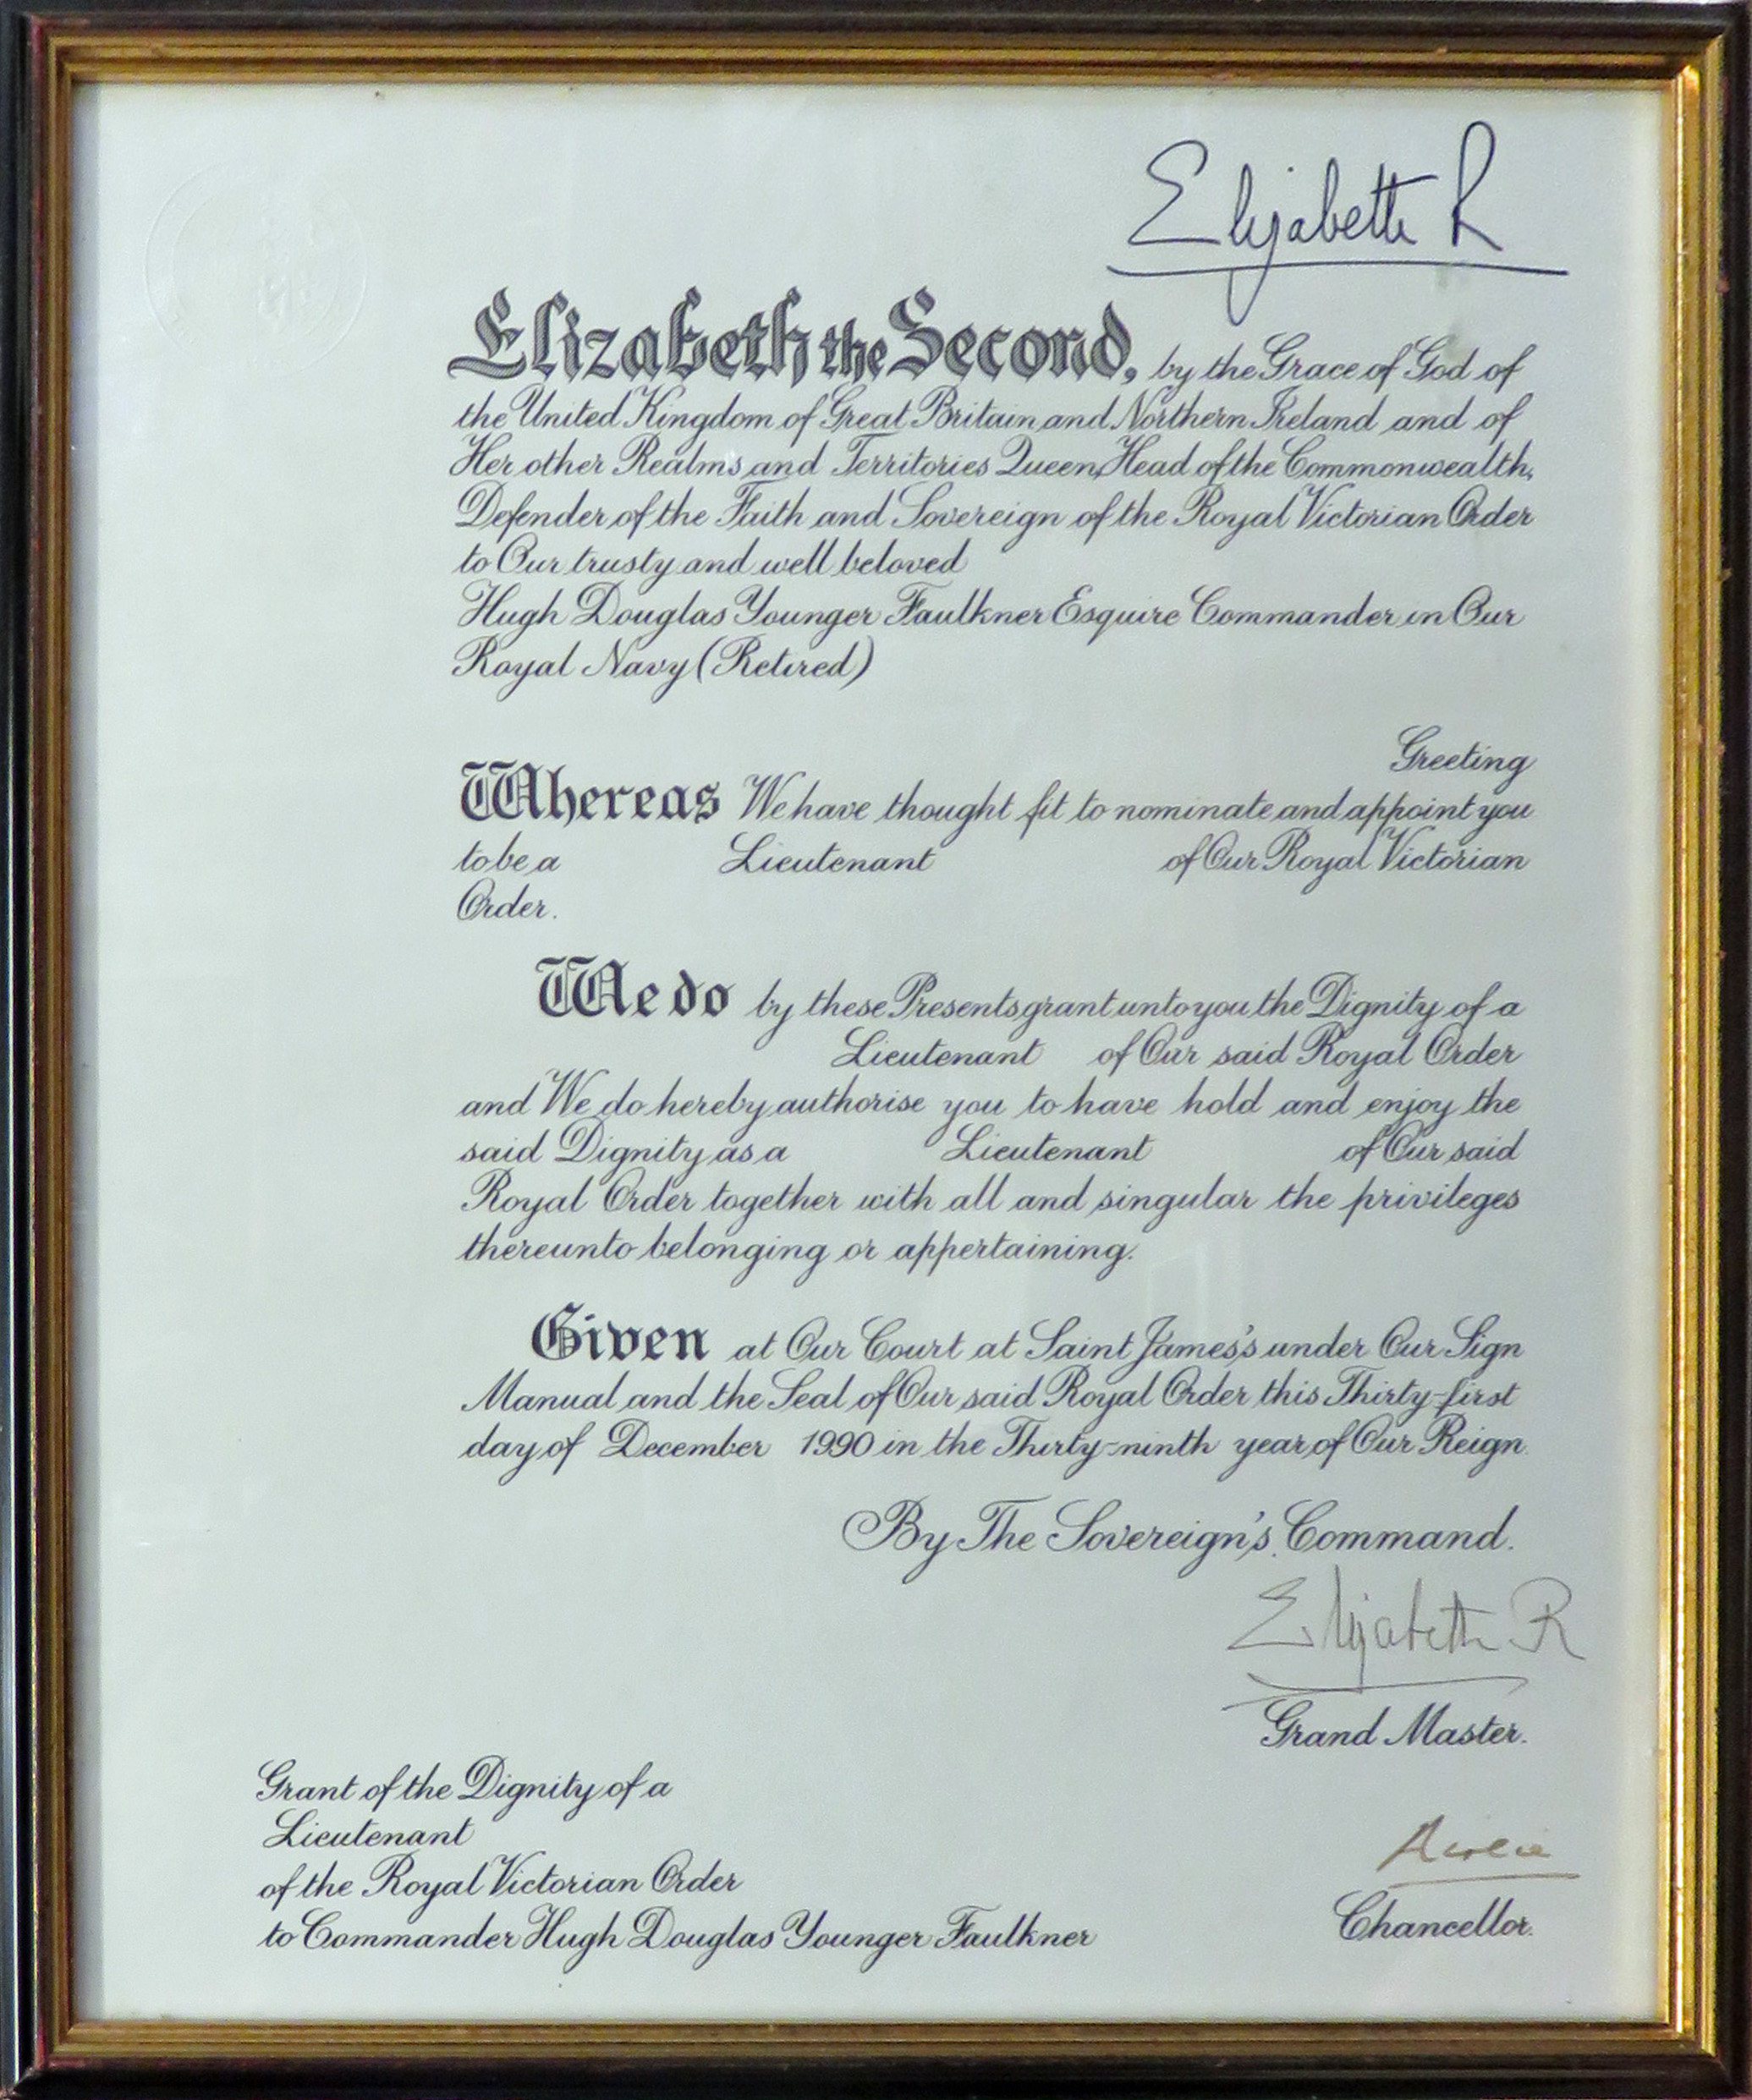 RVO Signed by Queen Elizabeth